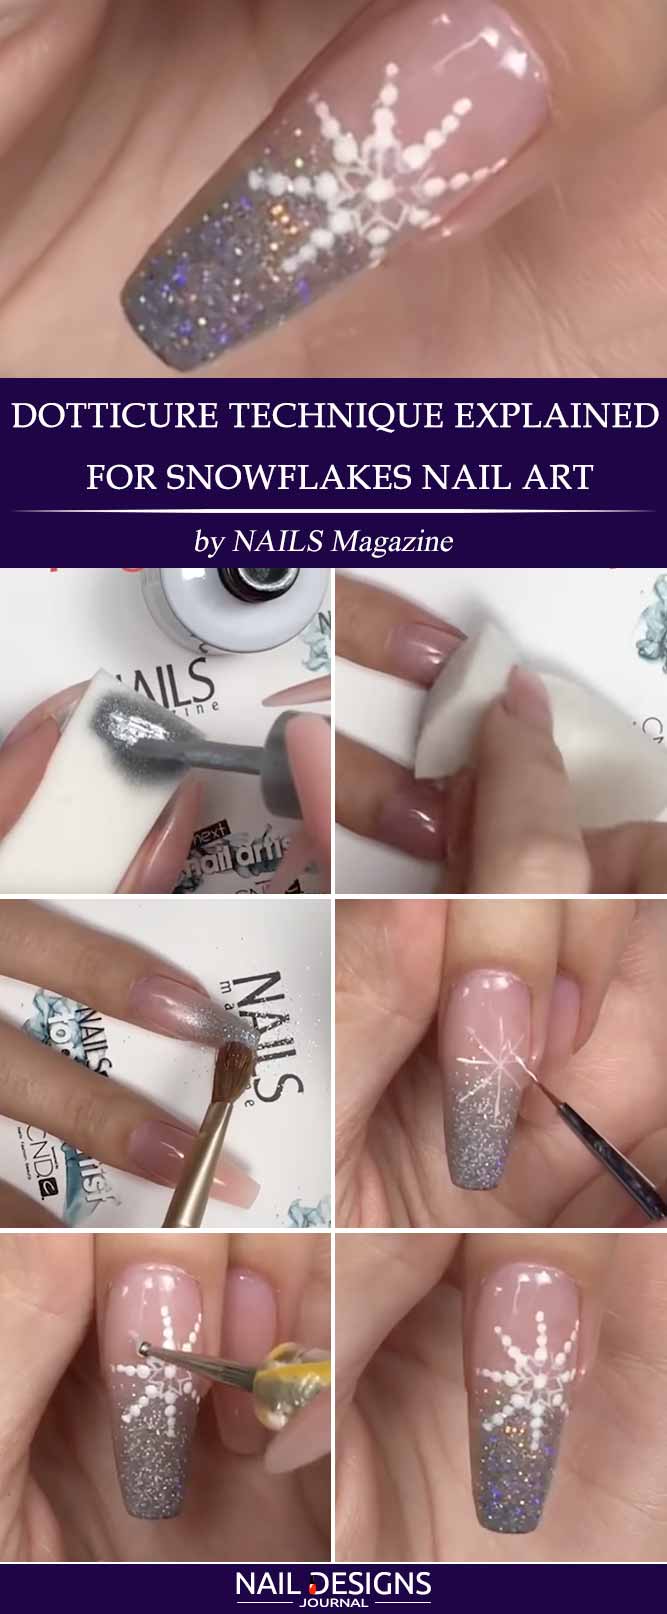 Dotticure Technique Explained for Snowflakes Nail Art